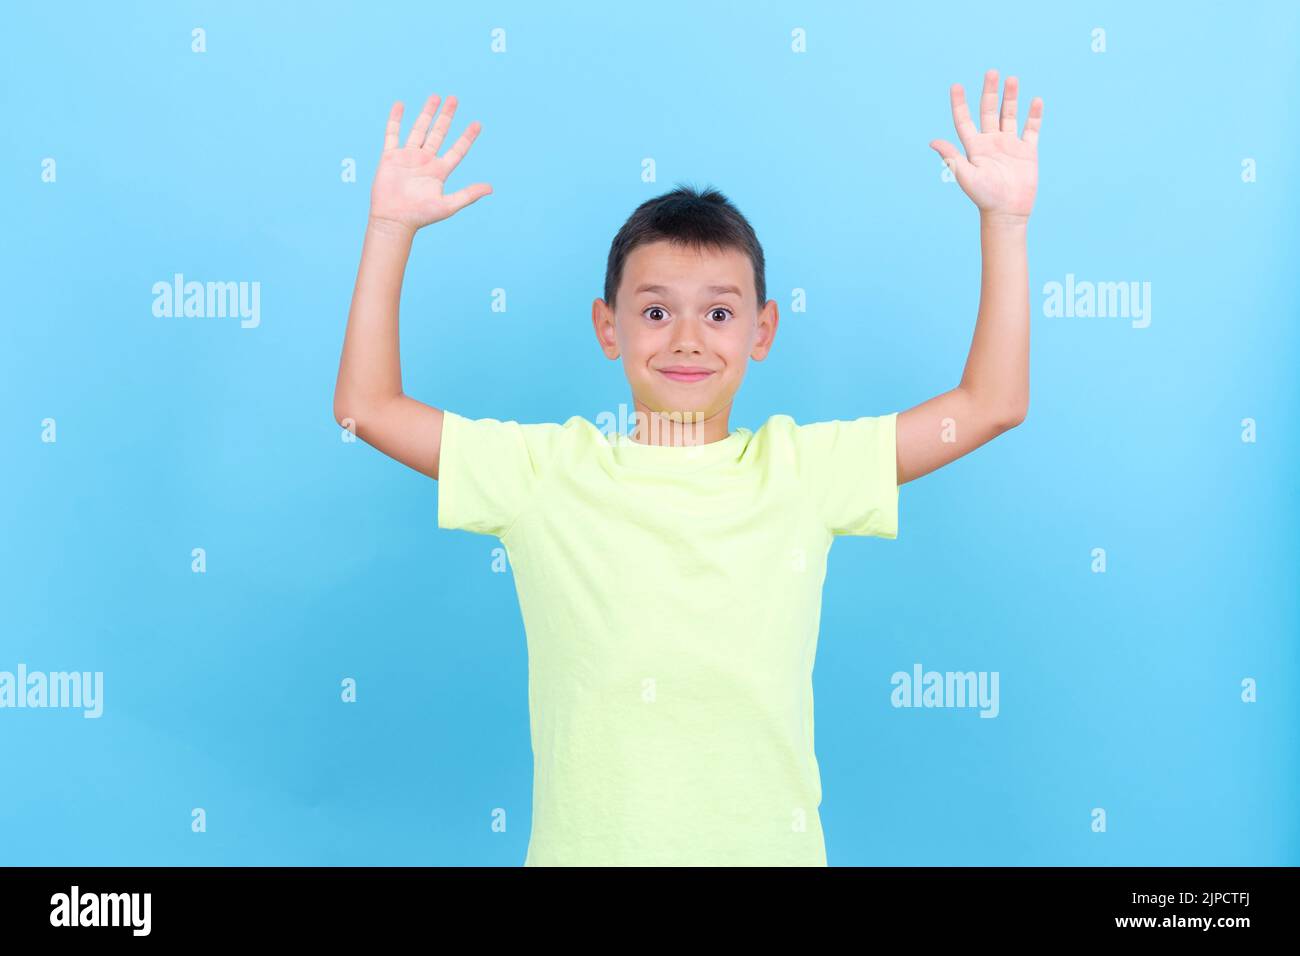 un garçon de 8 ans lève les mains d'un geste surpris Banque D'Images